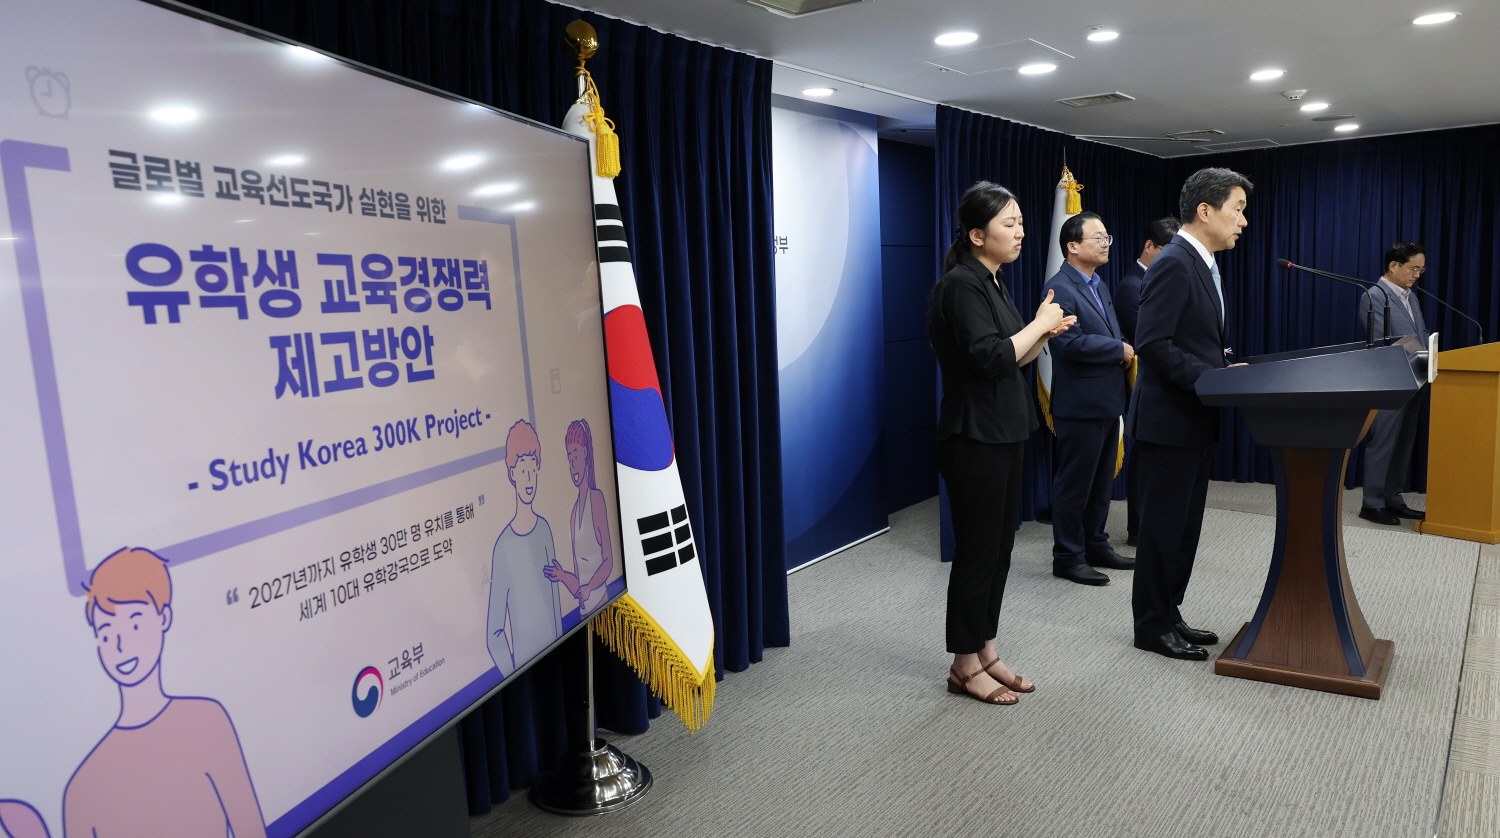 이주호 부총리 겸 교육부장관은 8월 16일(수) 정부서울청사에서 ‘유학생 교육경쟁력 제고 방안(Study Korea 300K Project)’을 발표했다. 